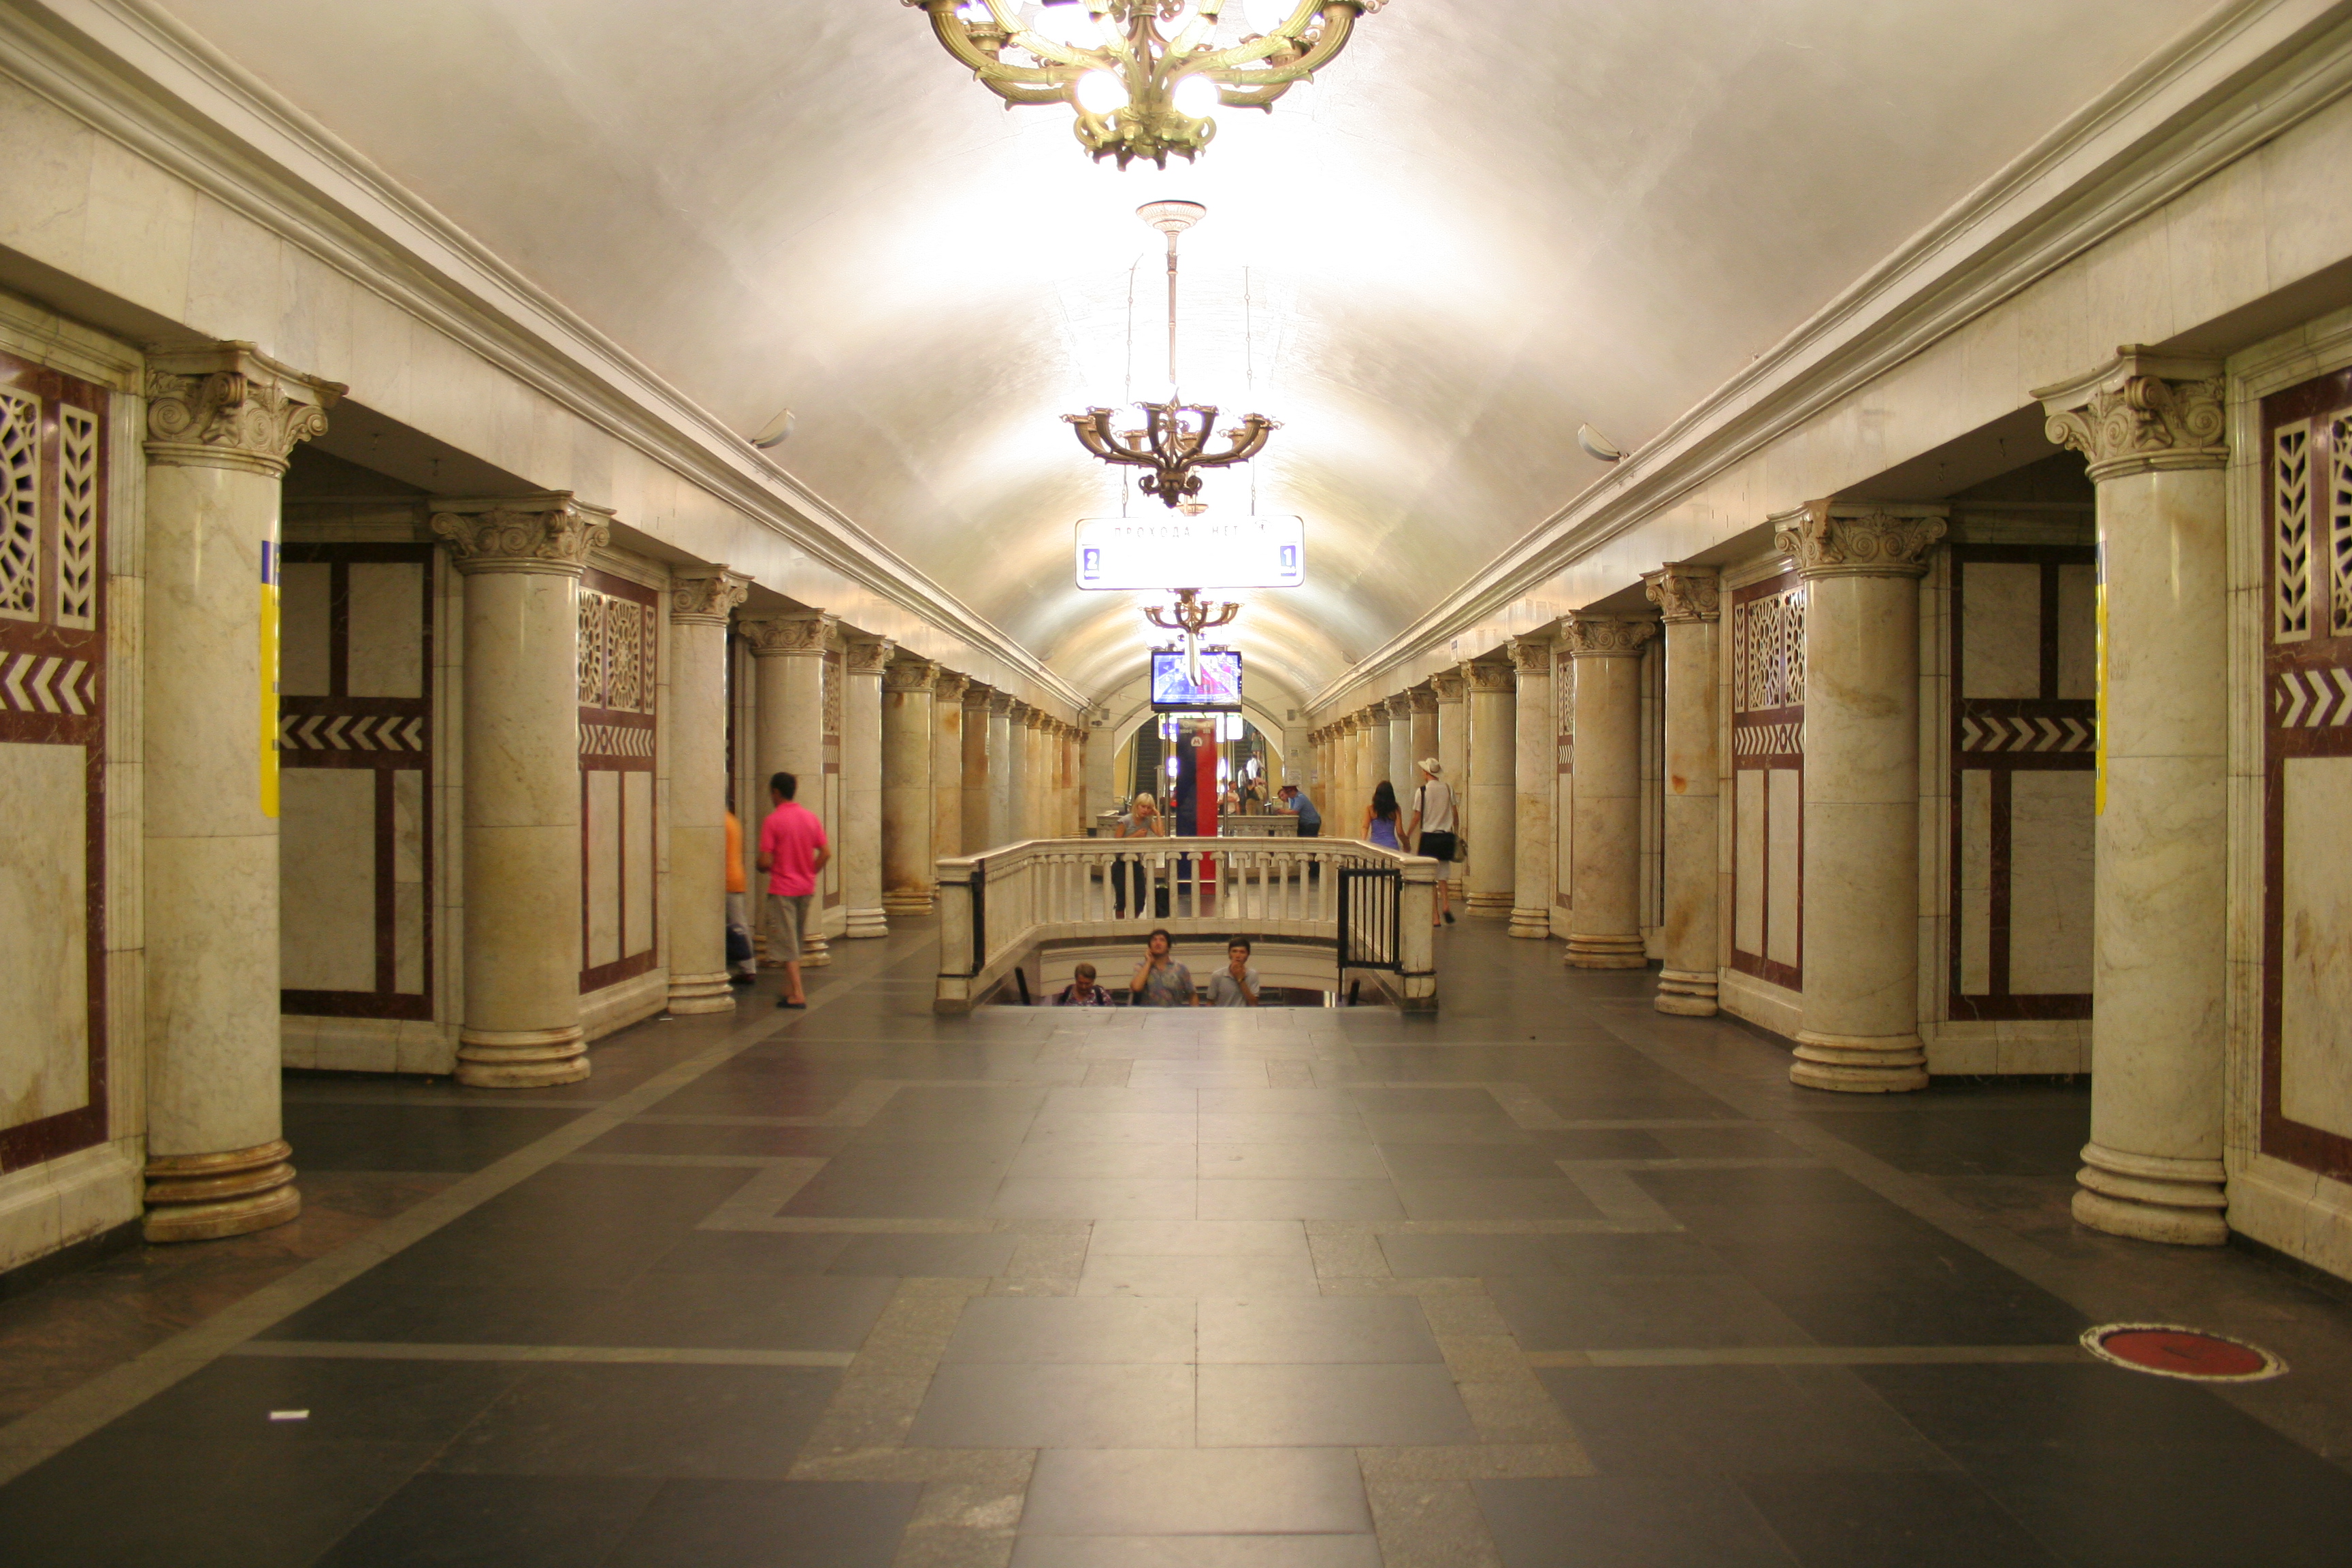 Павелецкий вокзал кольцевая